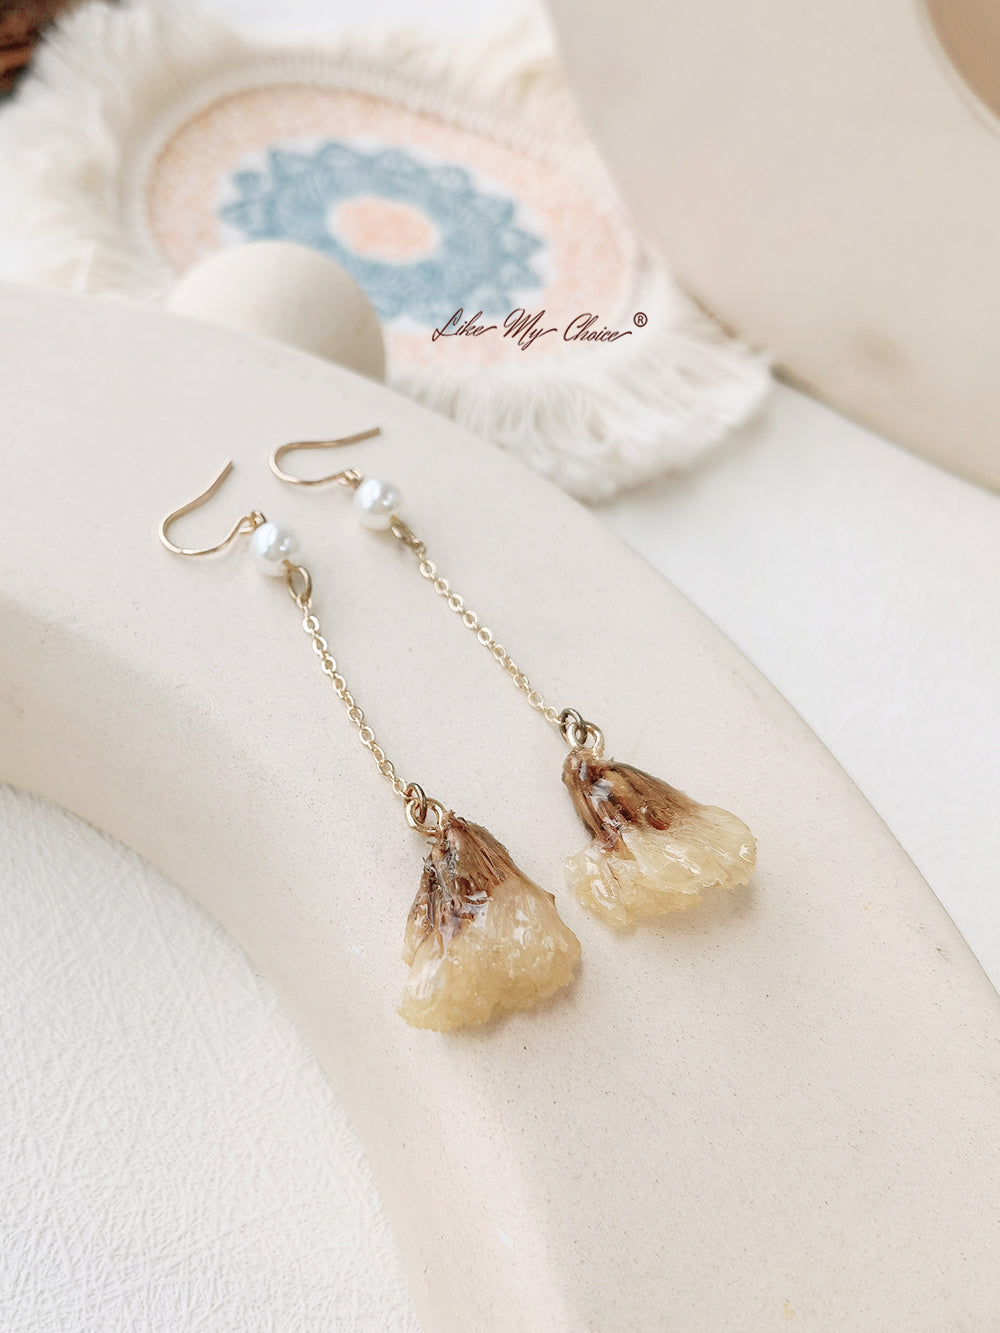 Orecchini di perle epossidiche con fiori secchi in resina del Nontiscordardime